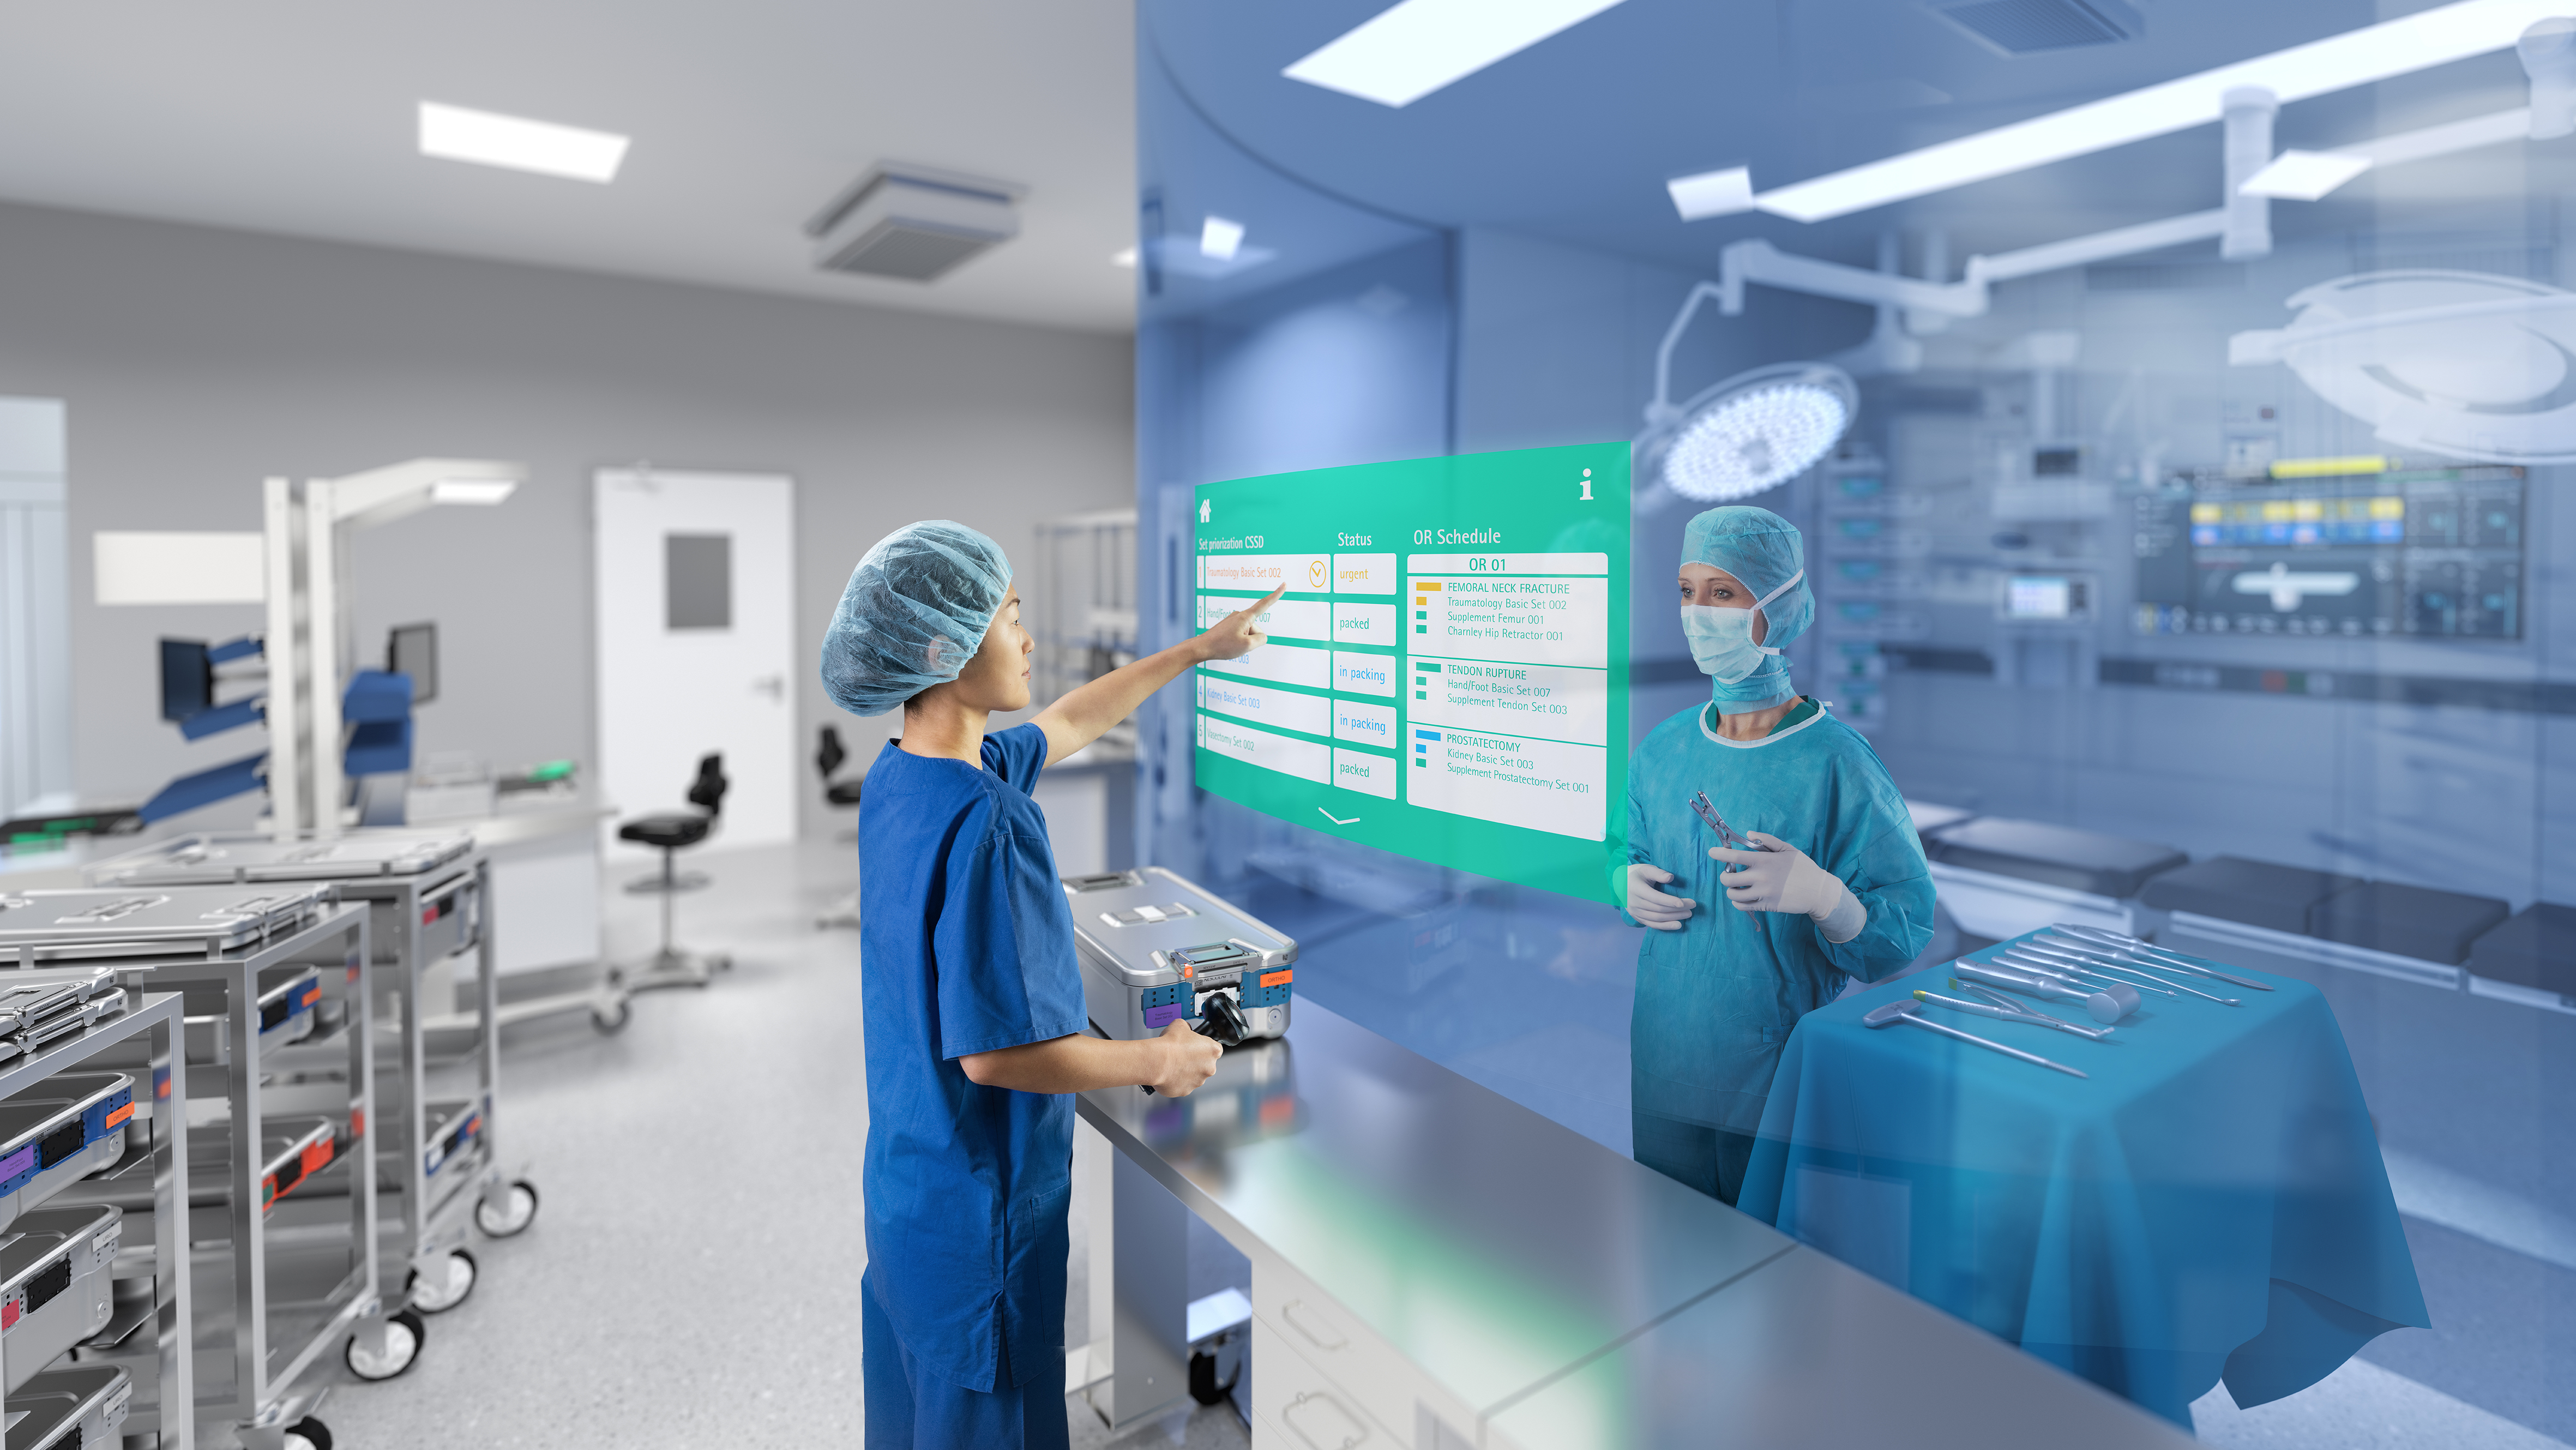 Zwei medizinische Fachkräfte in einem modernen Operationssaal. Der eine interagiert mit einem grünen holografischen Touchscreen, während der andere zusieht. Ein heller, gut ausgestatteter Raum.